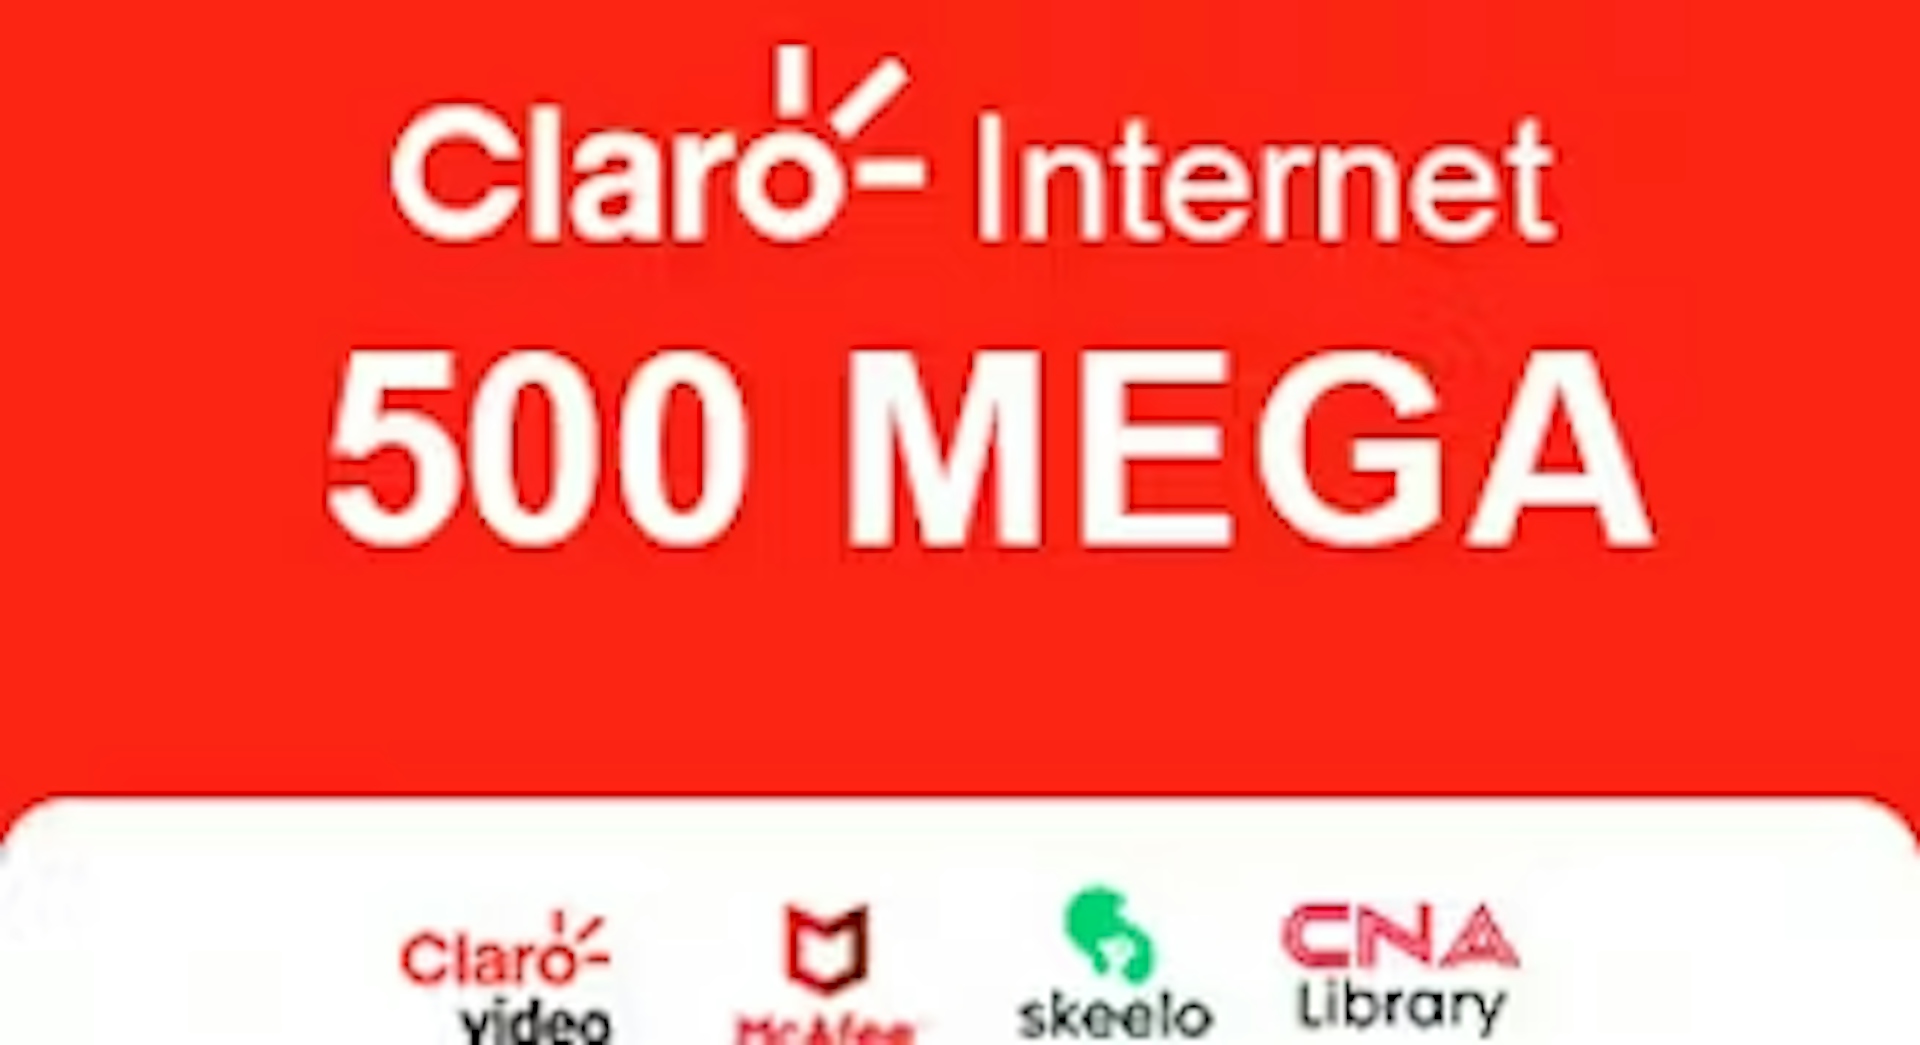 Claro Internet 500 mega com Claro Vídeo, McAfee, Skeelo e CNA Library